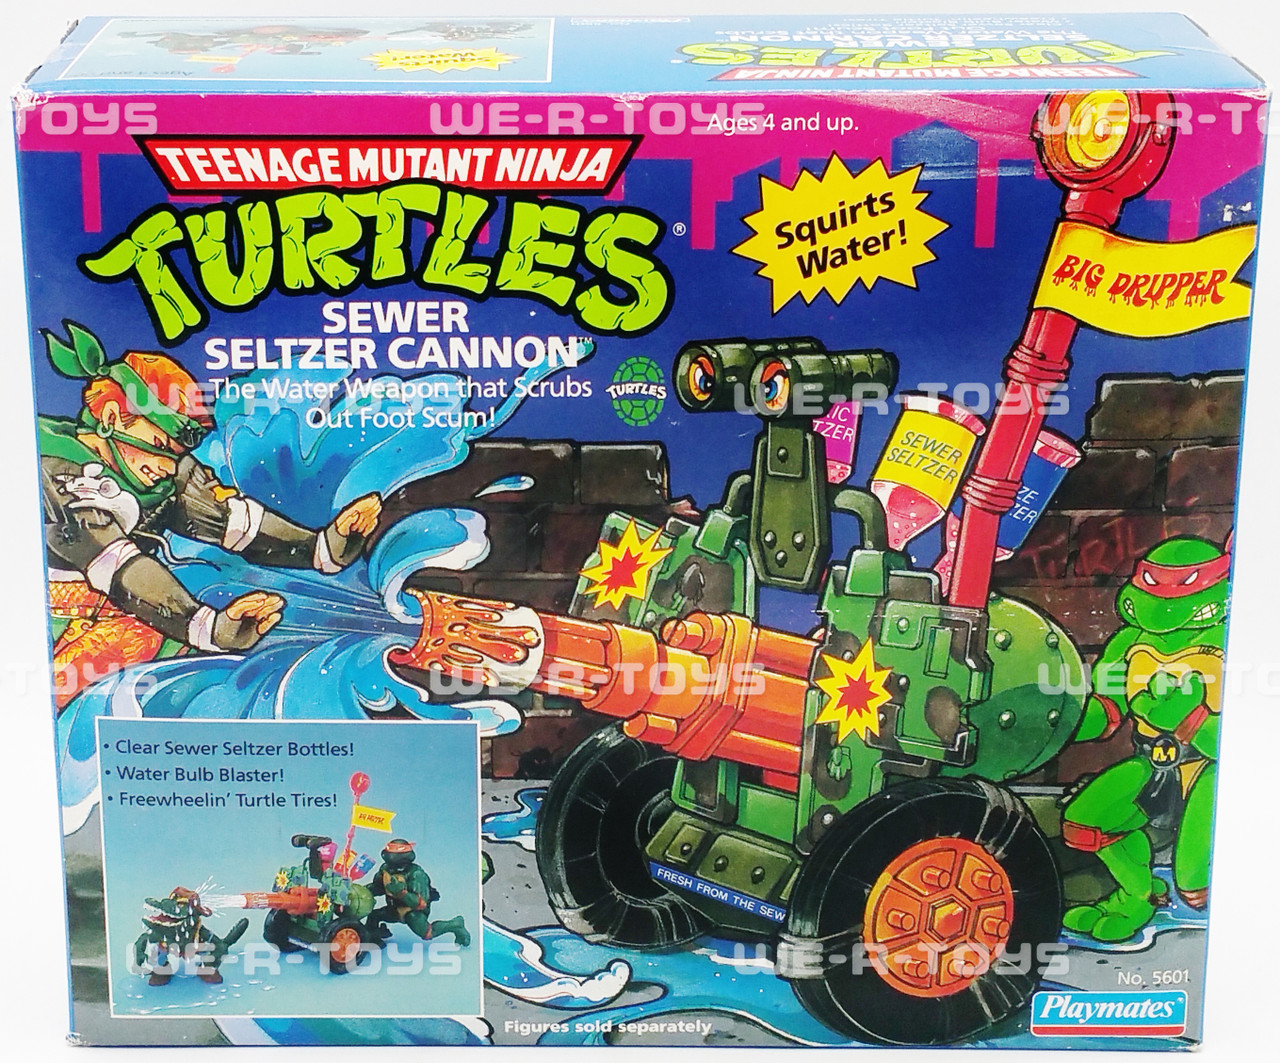 Classic Teenage Mutant Ninja Turtles ‐ Playmates Toys